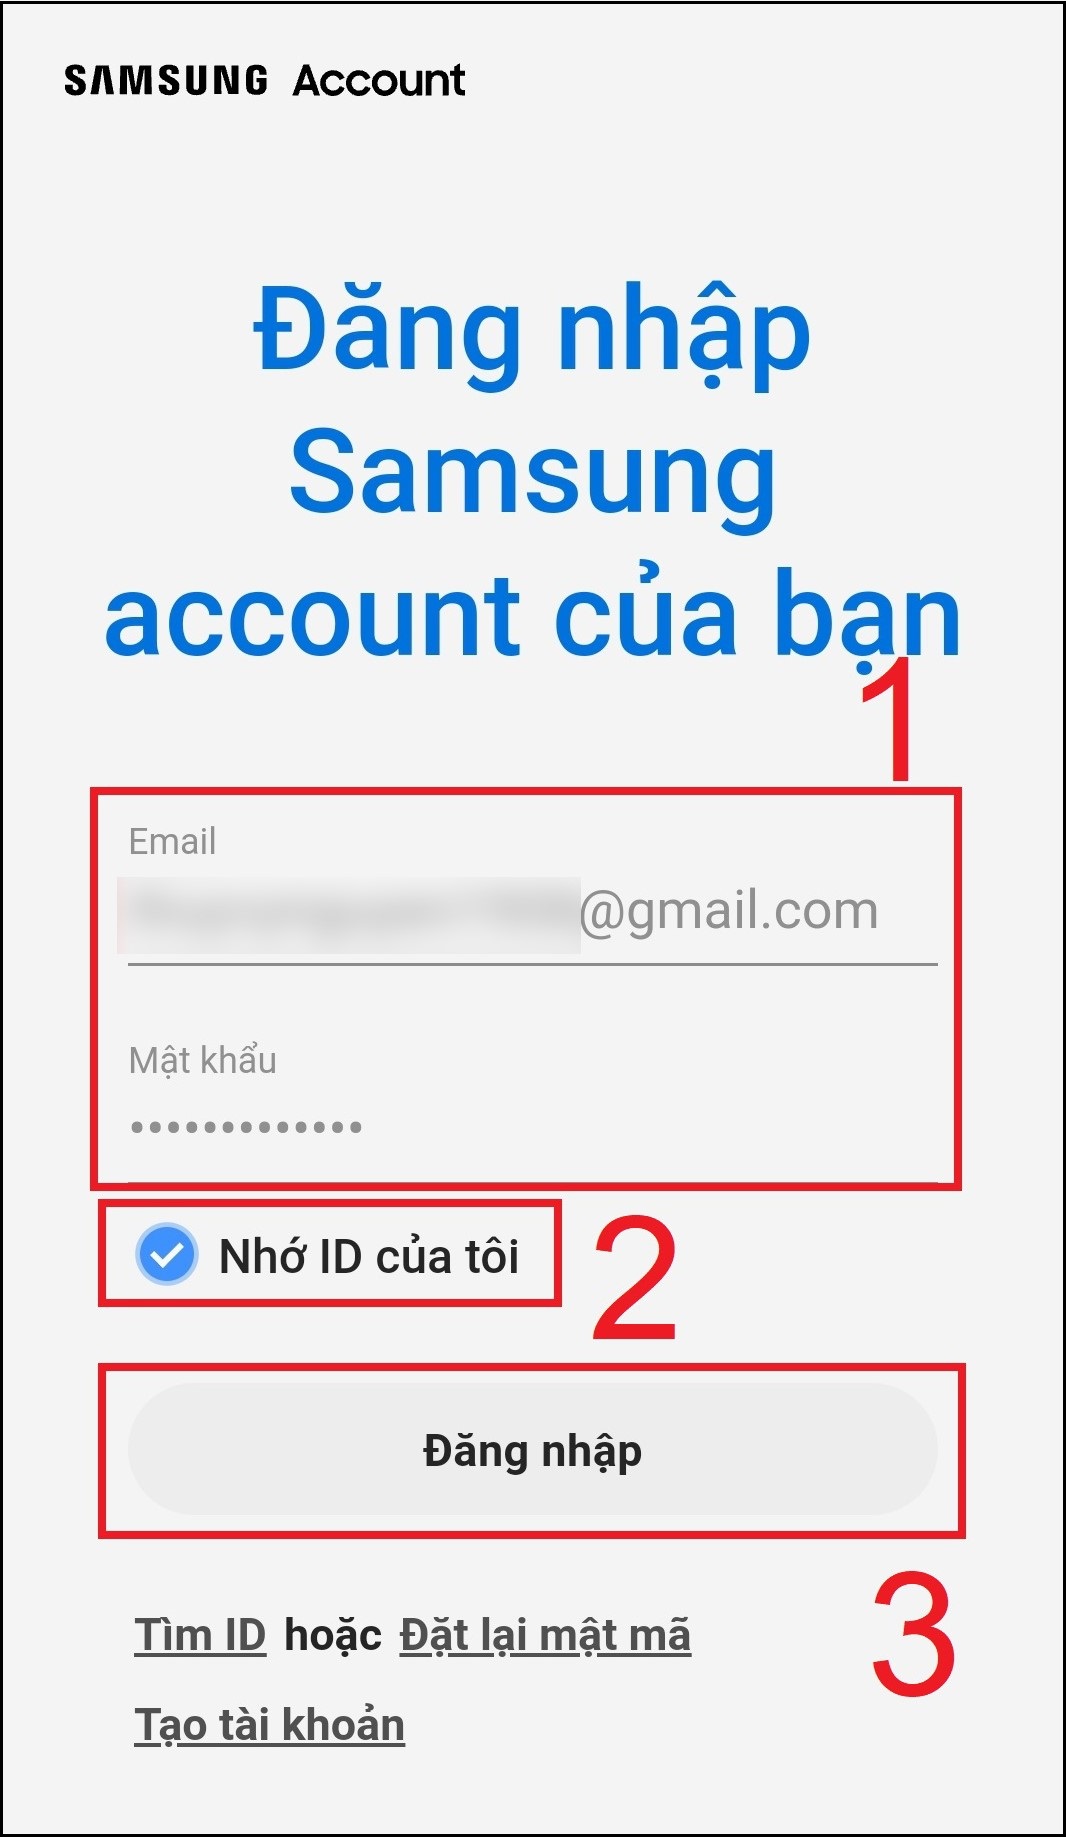 Hướng dẫn sử dụng ứng dụng SmartThings điều khiển Smart tivi Samsung > Cuối cùng, bạn nhập lại mật khẩu đăng nhập Samsung Account và chọn Nhớ ID của tôi để thuận tiện cho lần đăng nhập tiếp theo nhé > Chọn Đăng nhập.